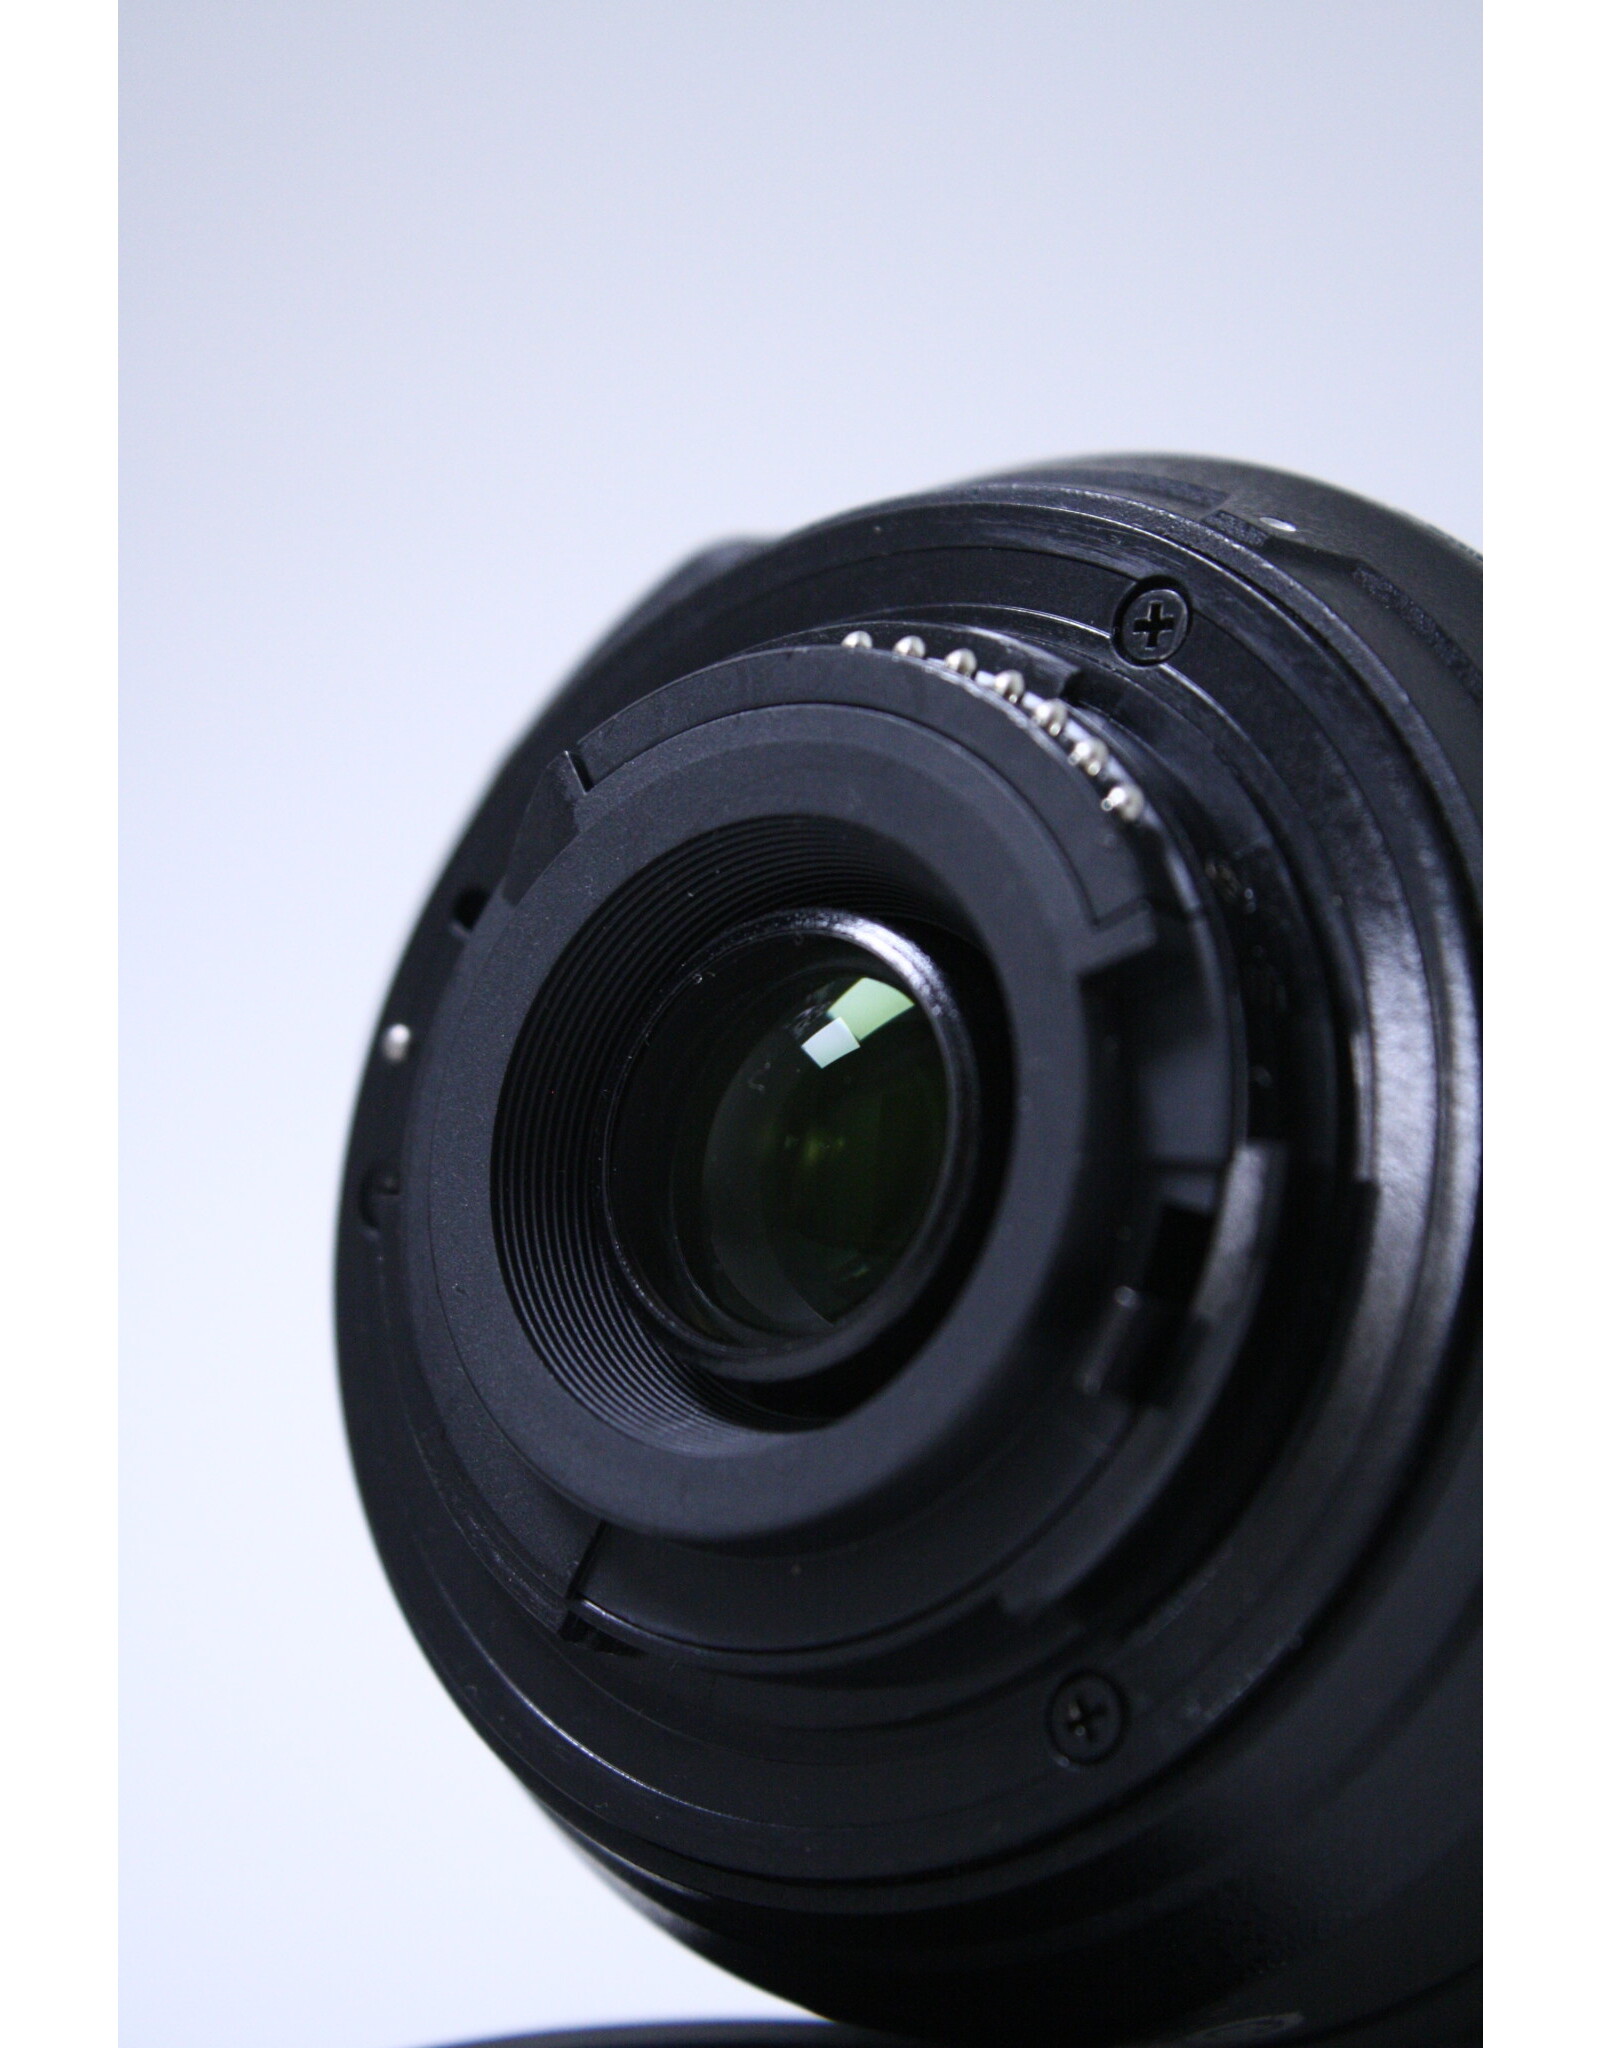 Nikon Nikon D3100 14.2 MP DSLR Camera Kit w/AF-S DX 18-55mm & AF 55-200mm Lens (Pre-owned)